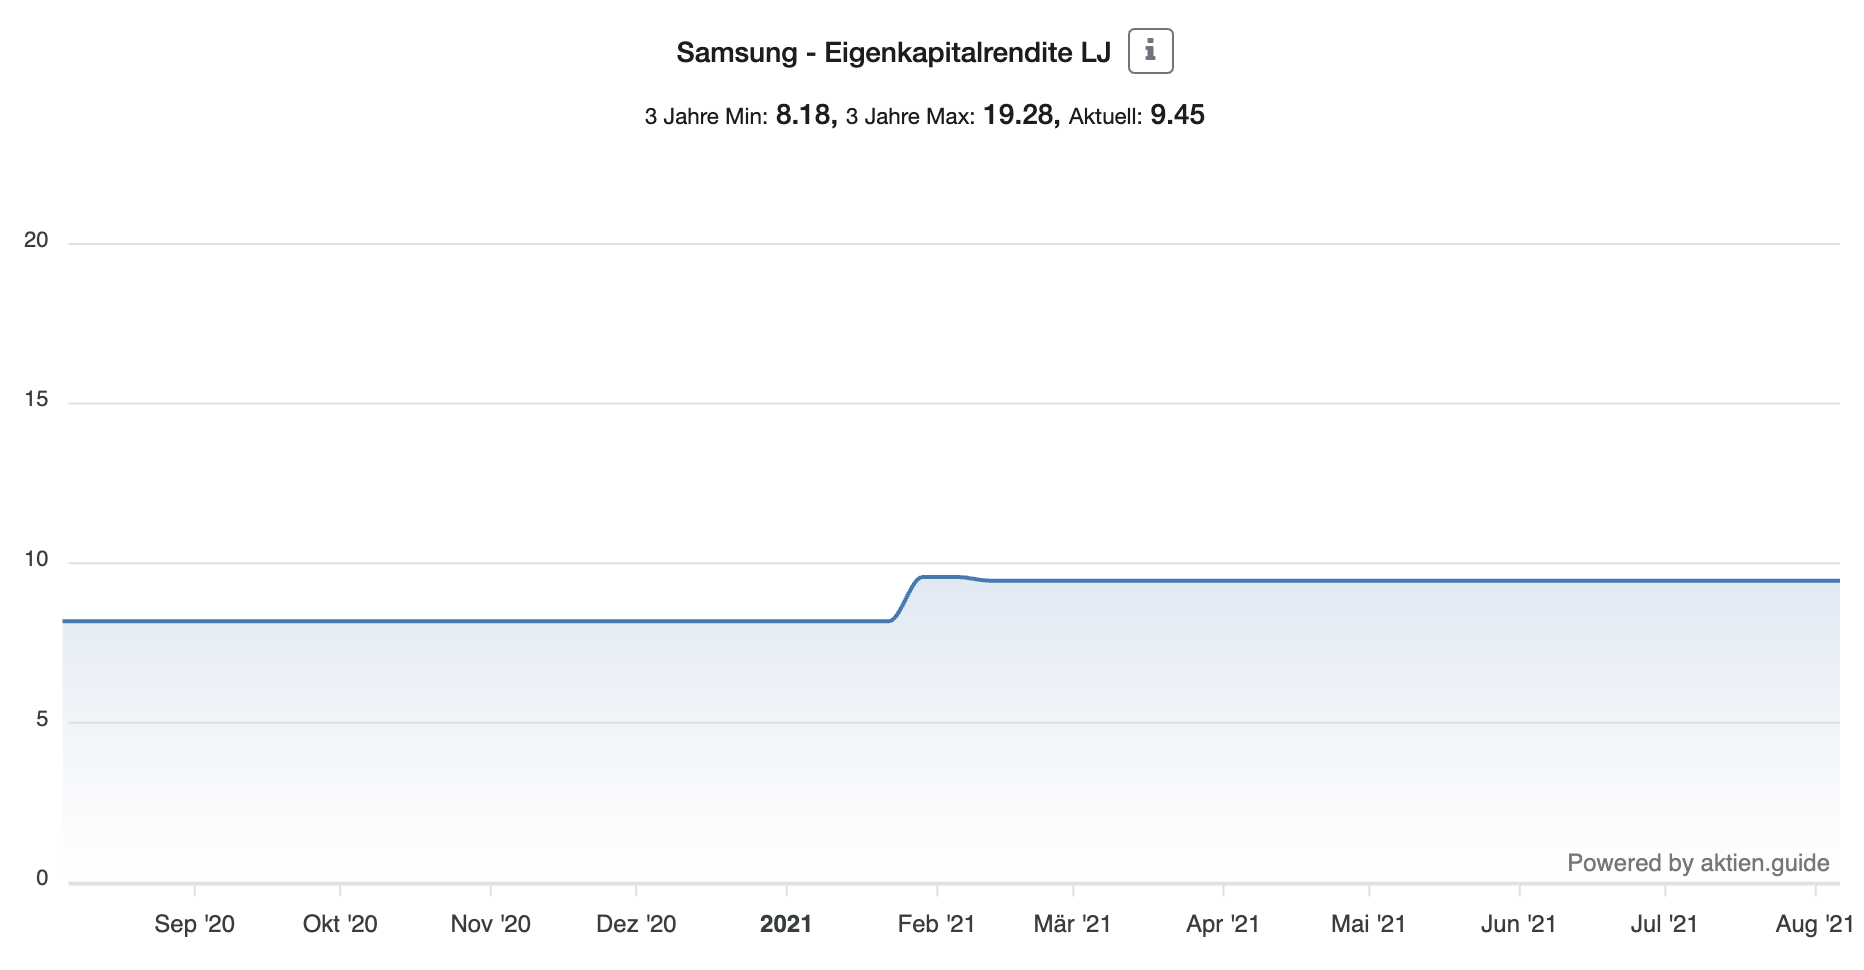 Samsung Aktie Eigenkapitalrendite 1 Jahr